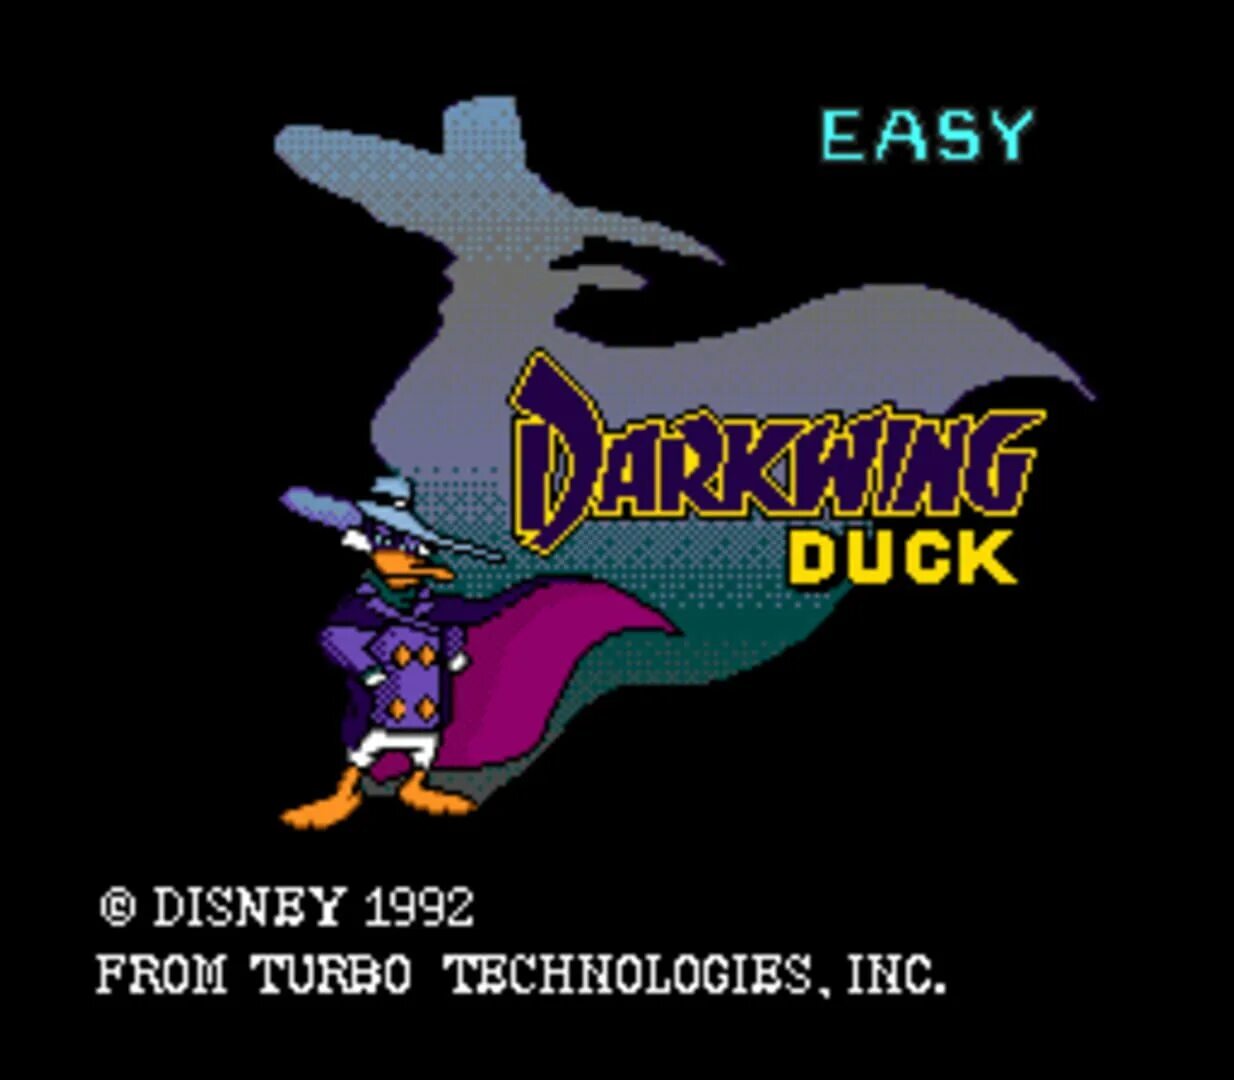 Darkwing duck capcom. Черный плащ сега. Darkwing Duck TURBOGRAFX-16. Darkwing Duck PC engine. Darkwing Duck игра Capcom.